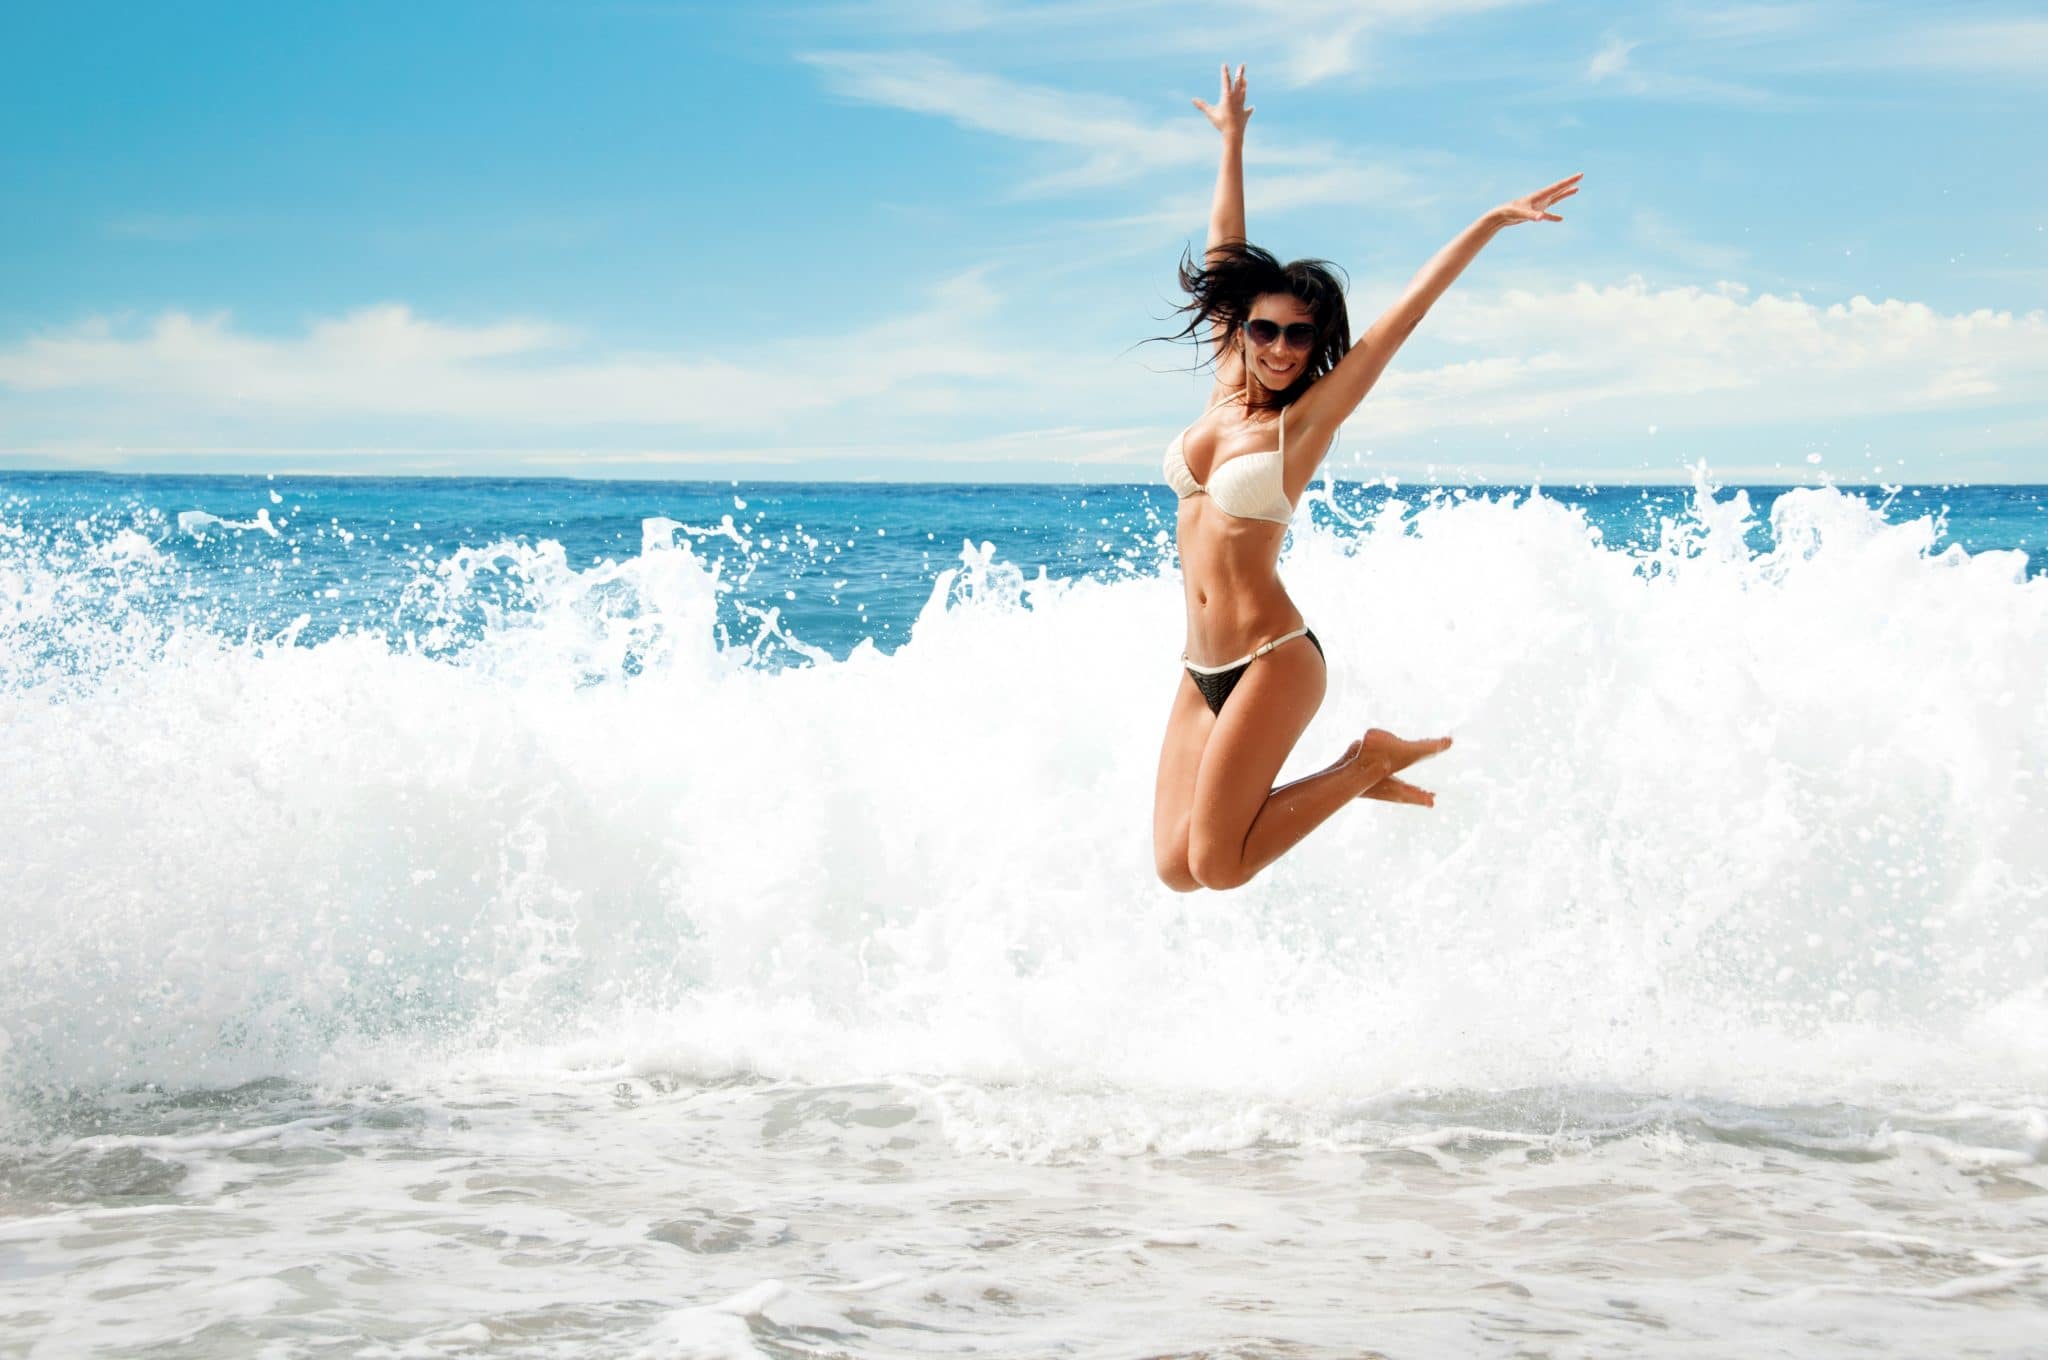 Femme sautant joyeusement sur la plage avec des vagues se brisant en arrière-plan, incarnant la liberté de se baigner avec ses règles.